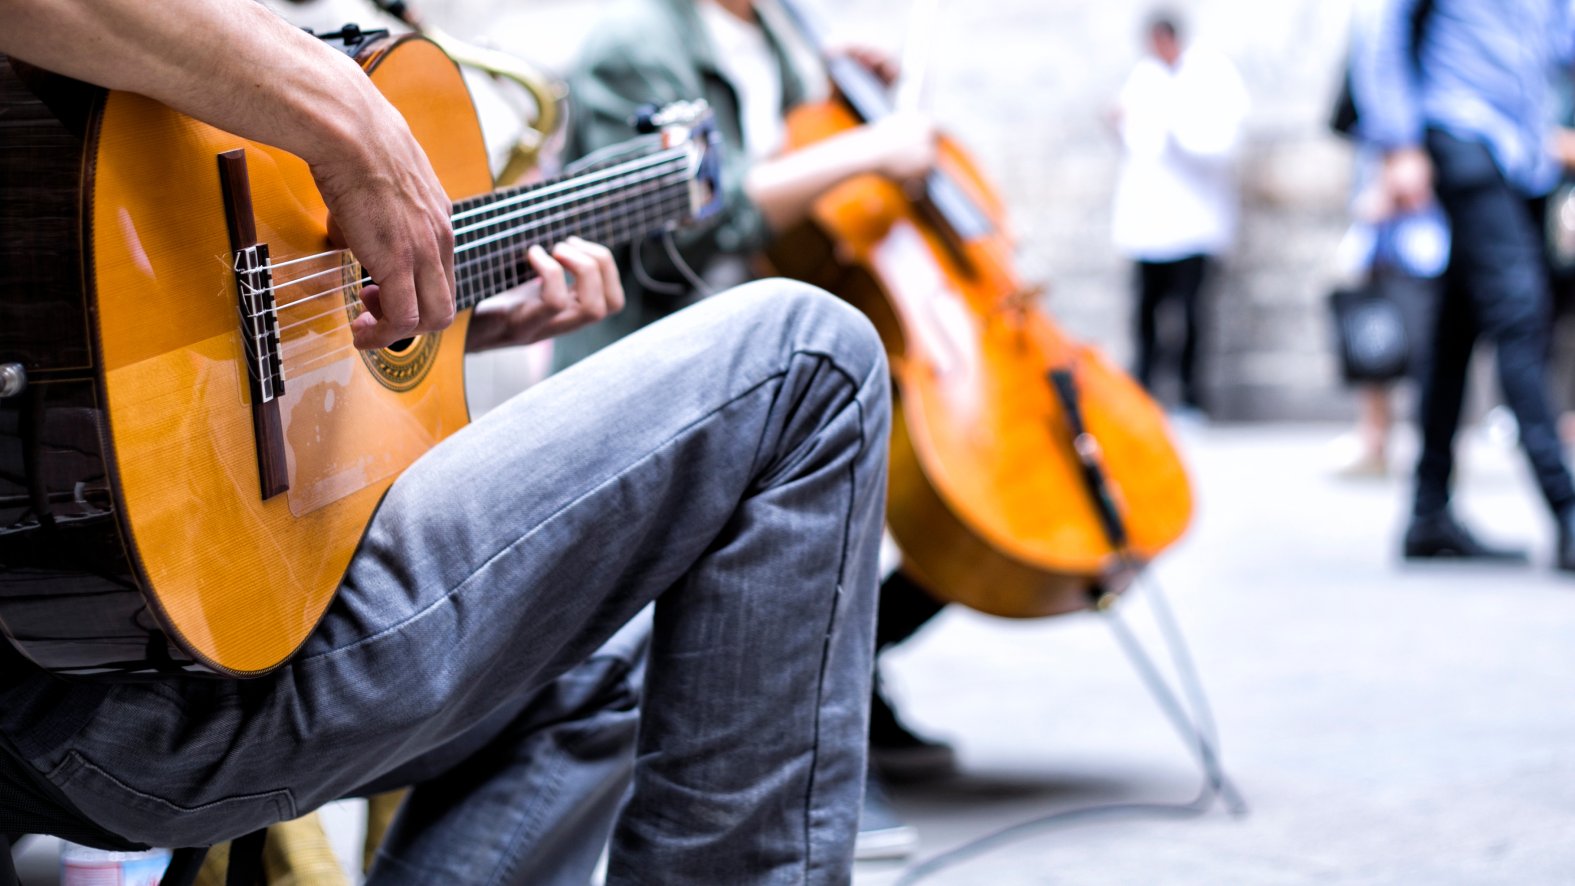 Musica que musica. Музыканты в парке. Певцов с гитарой. Уличный музыкант на гитаре одежда. Фотографии уличных музыкантов.